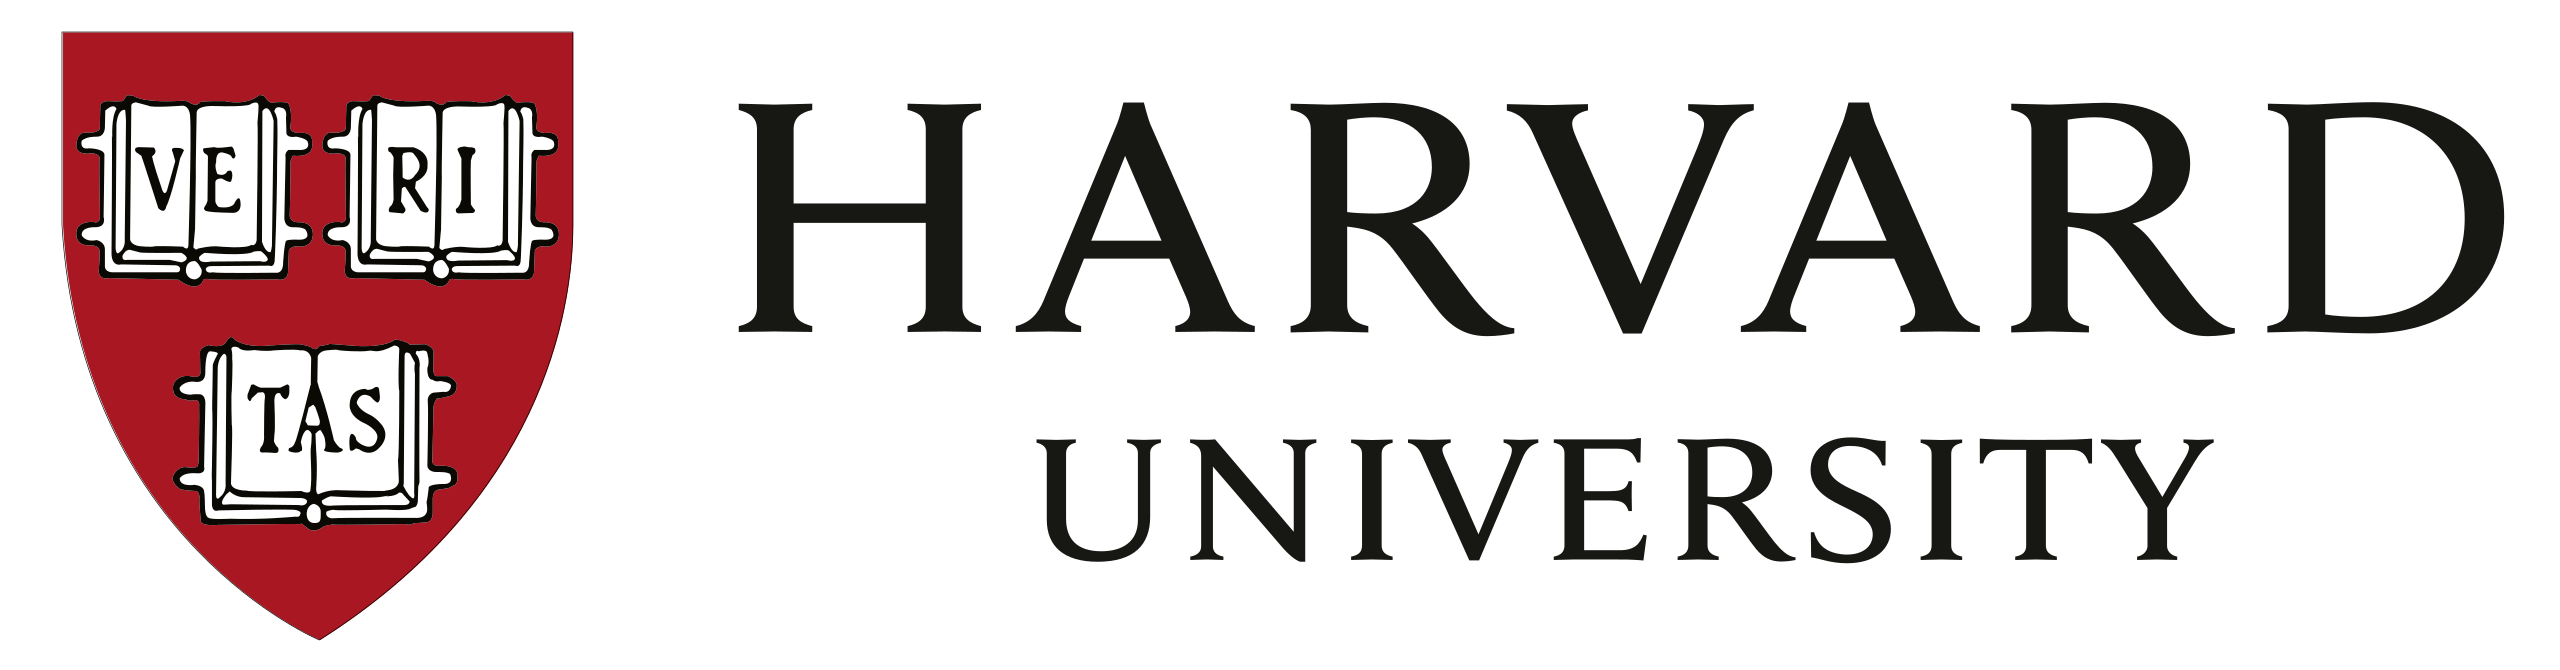 Harvard_University_logo.svg-min